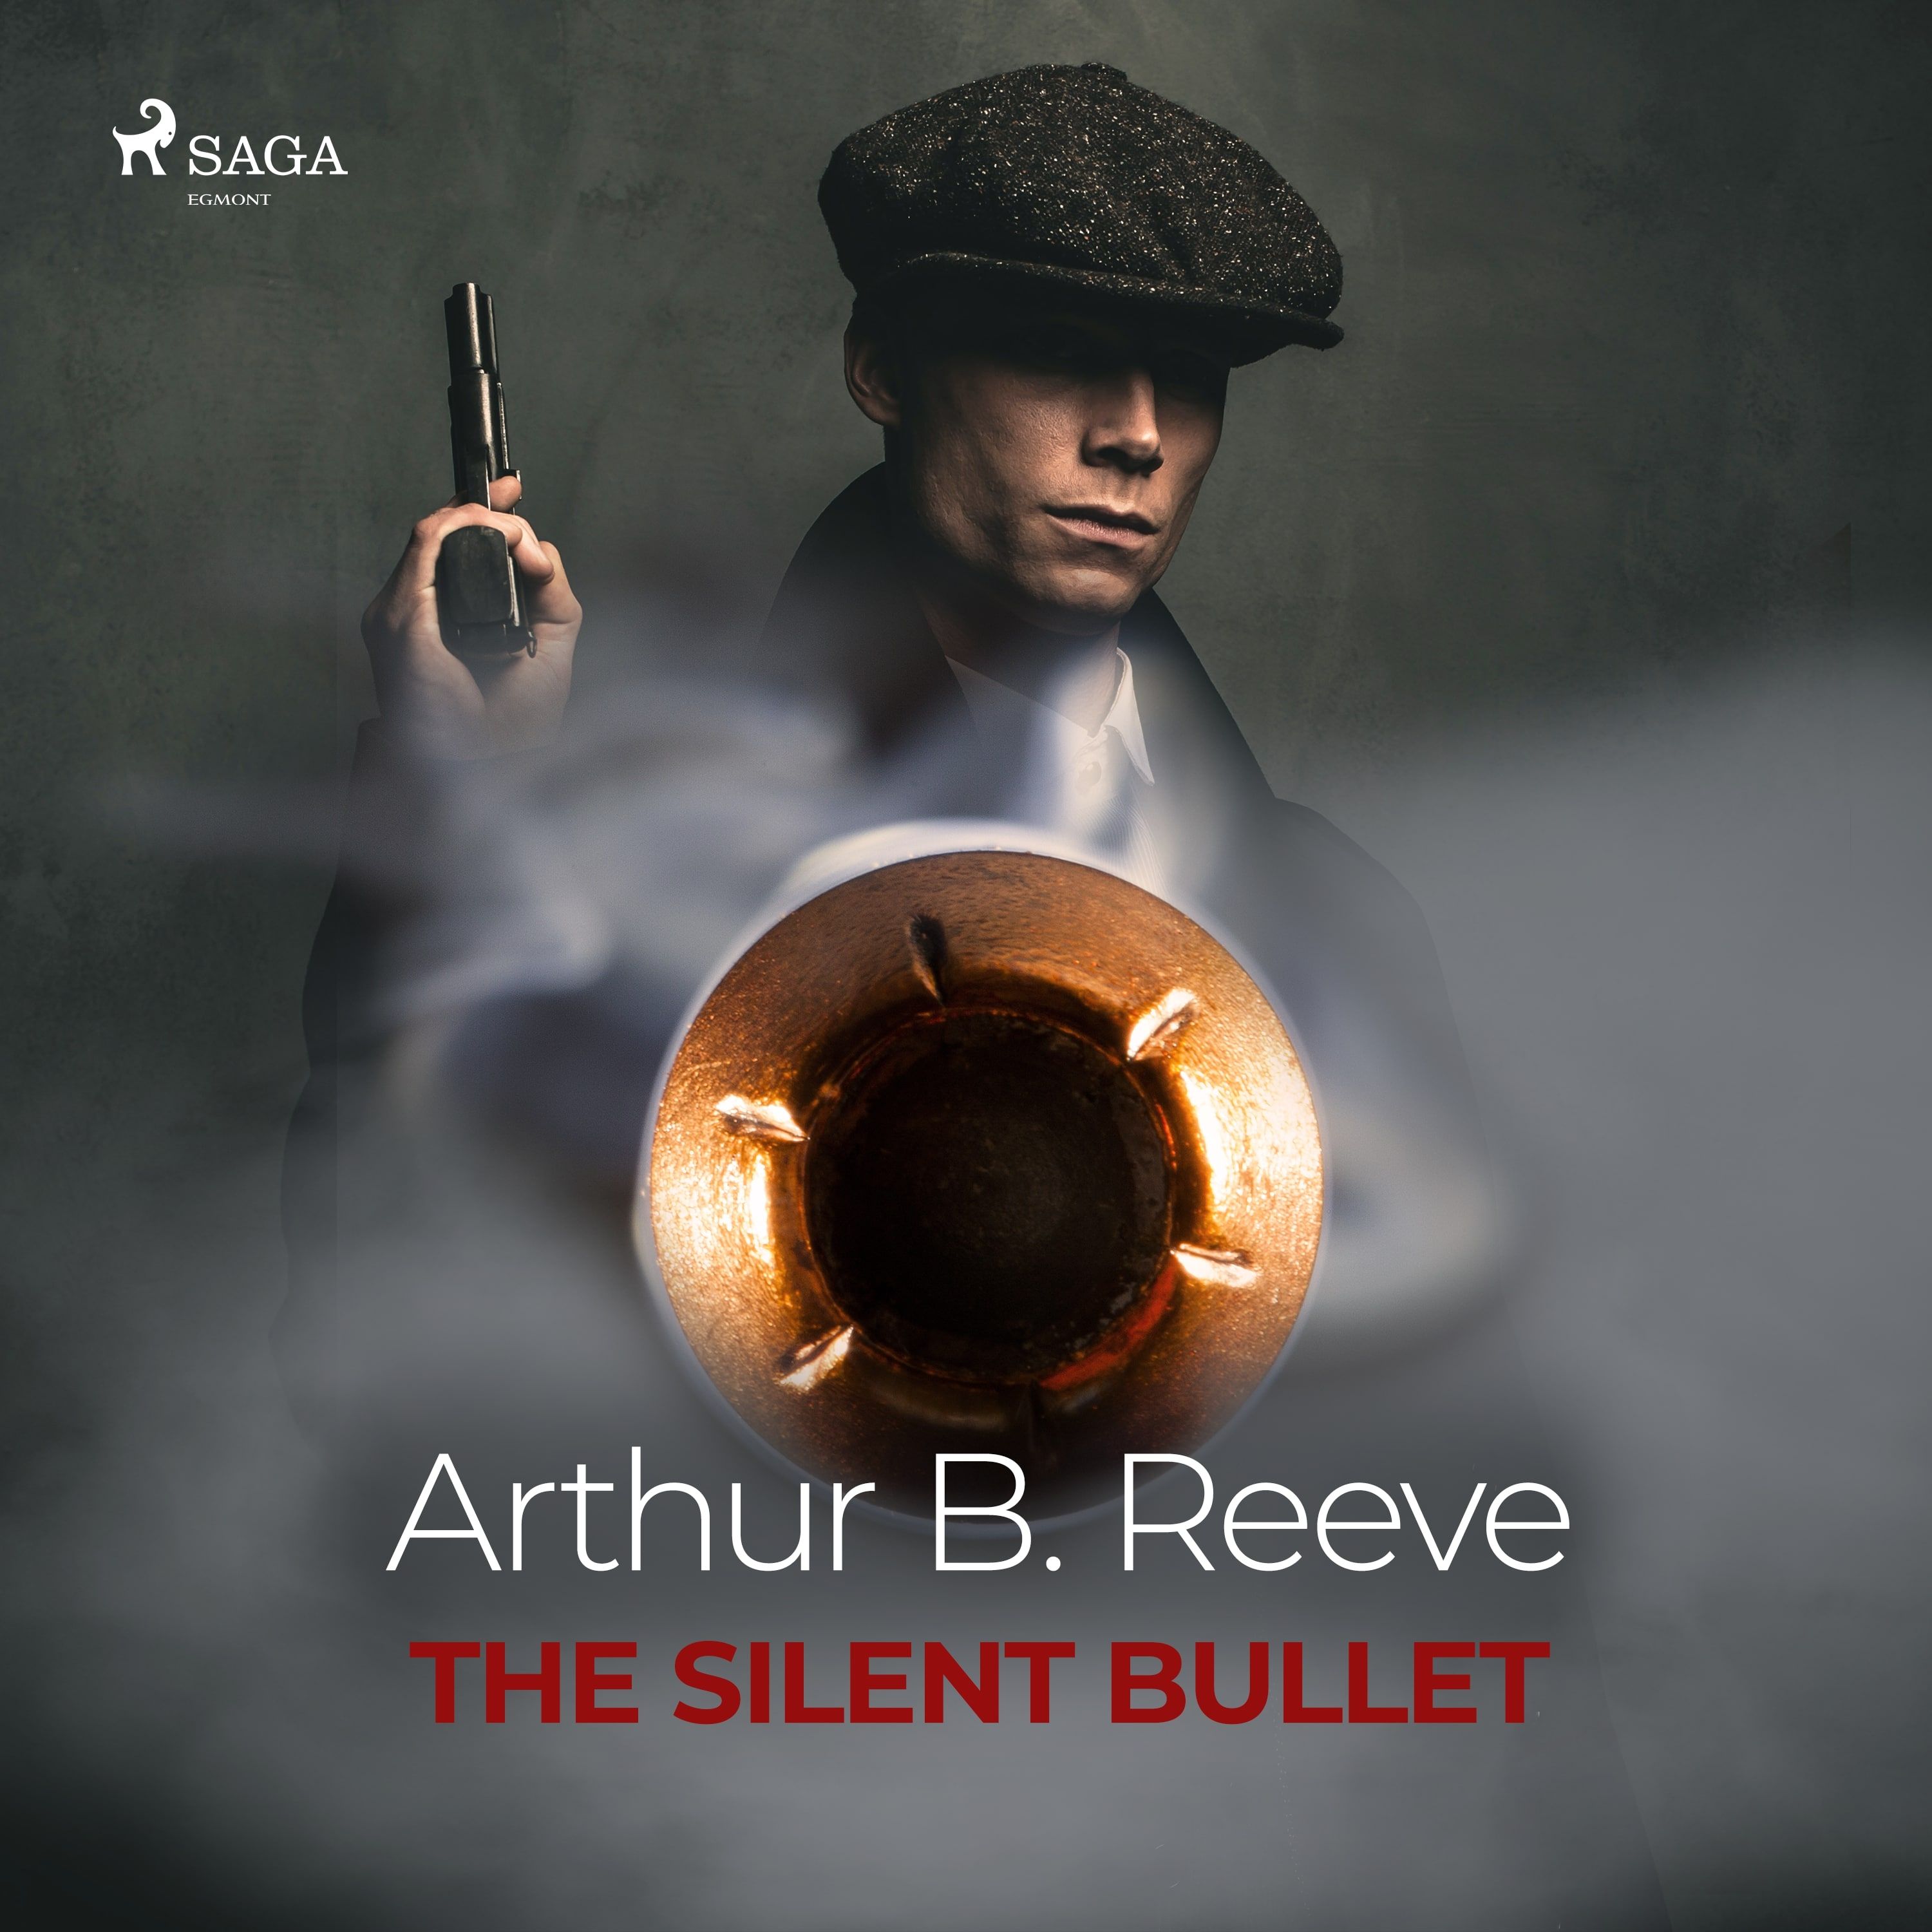 The Silent Bullet, lydbog af Arthur B. Reeve